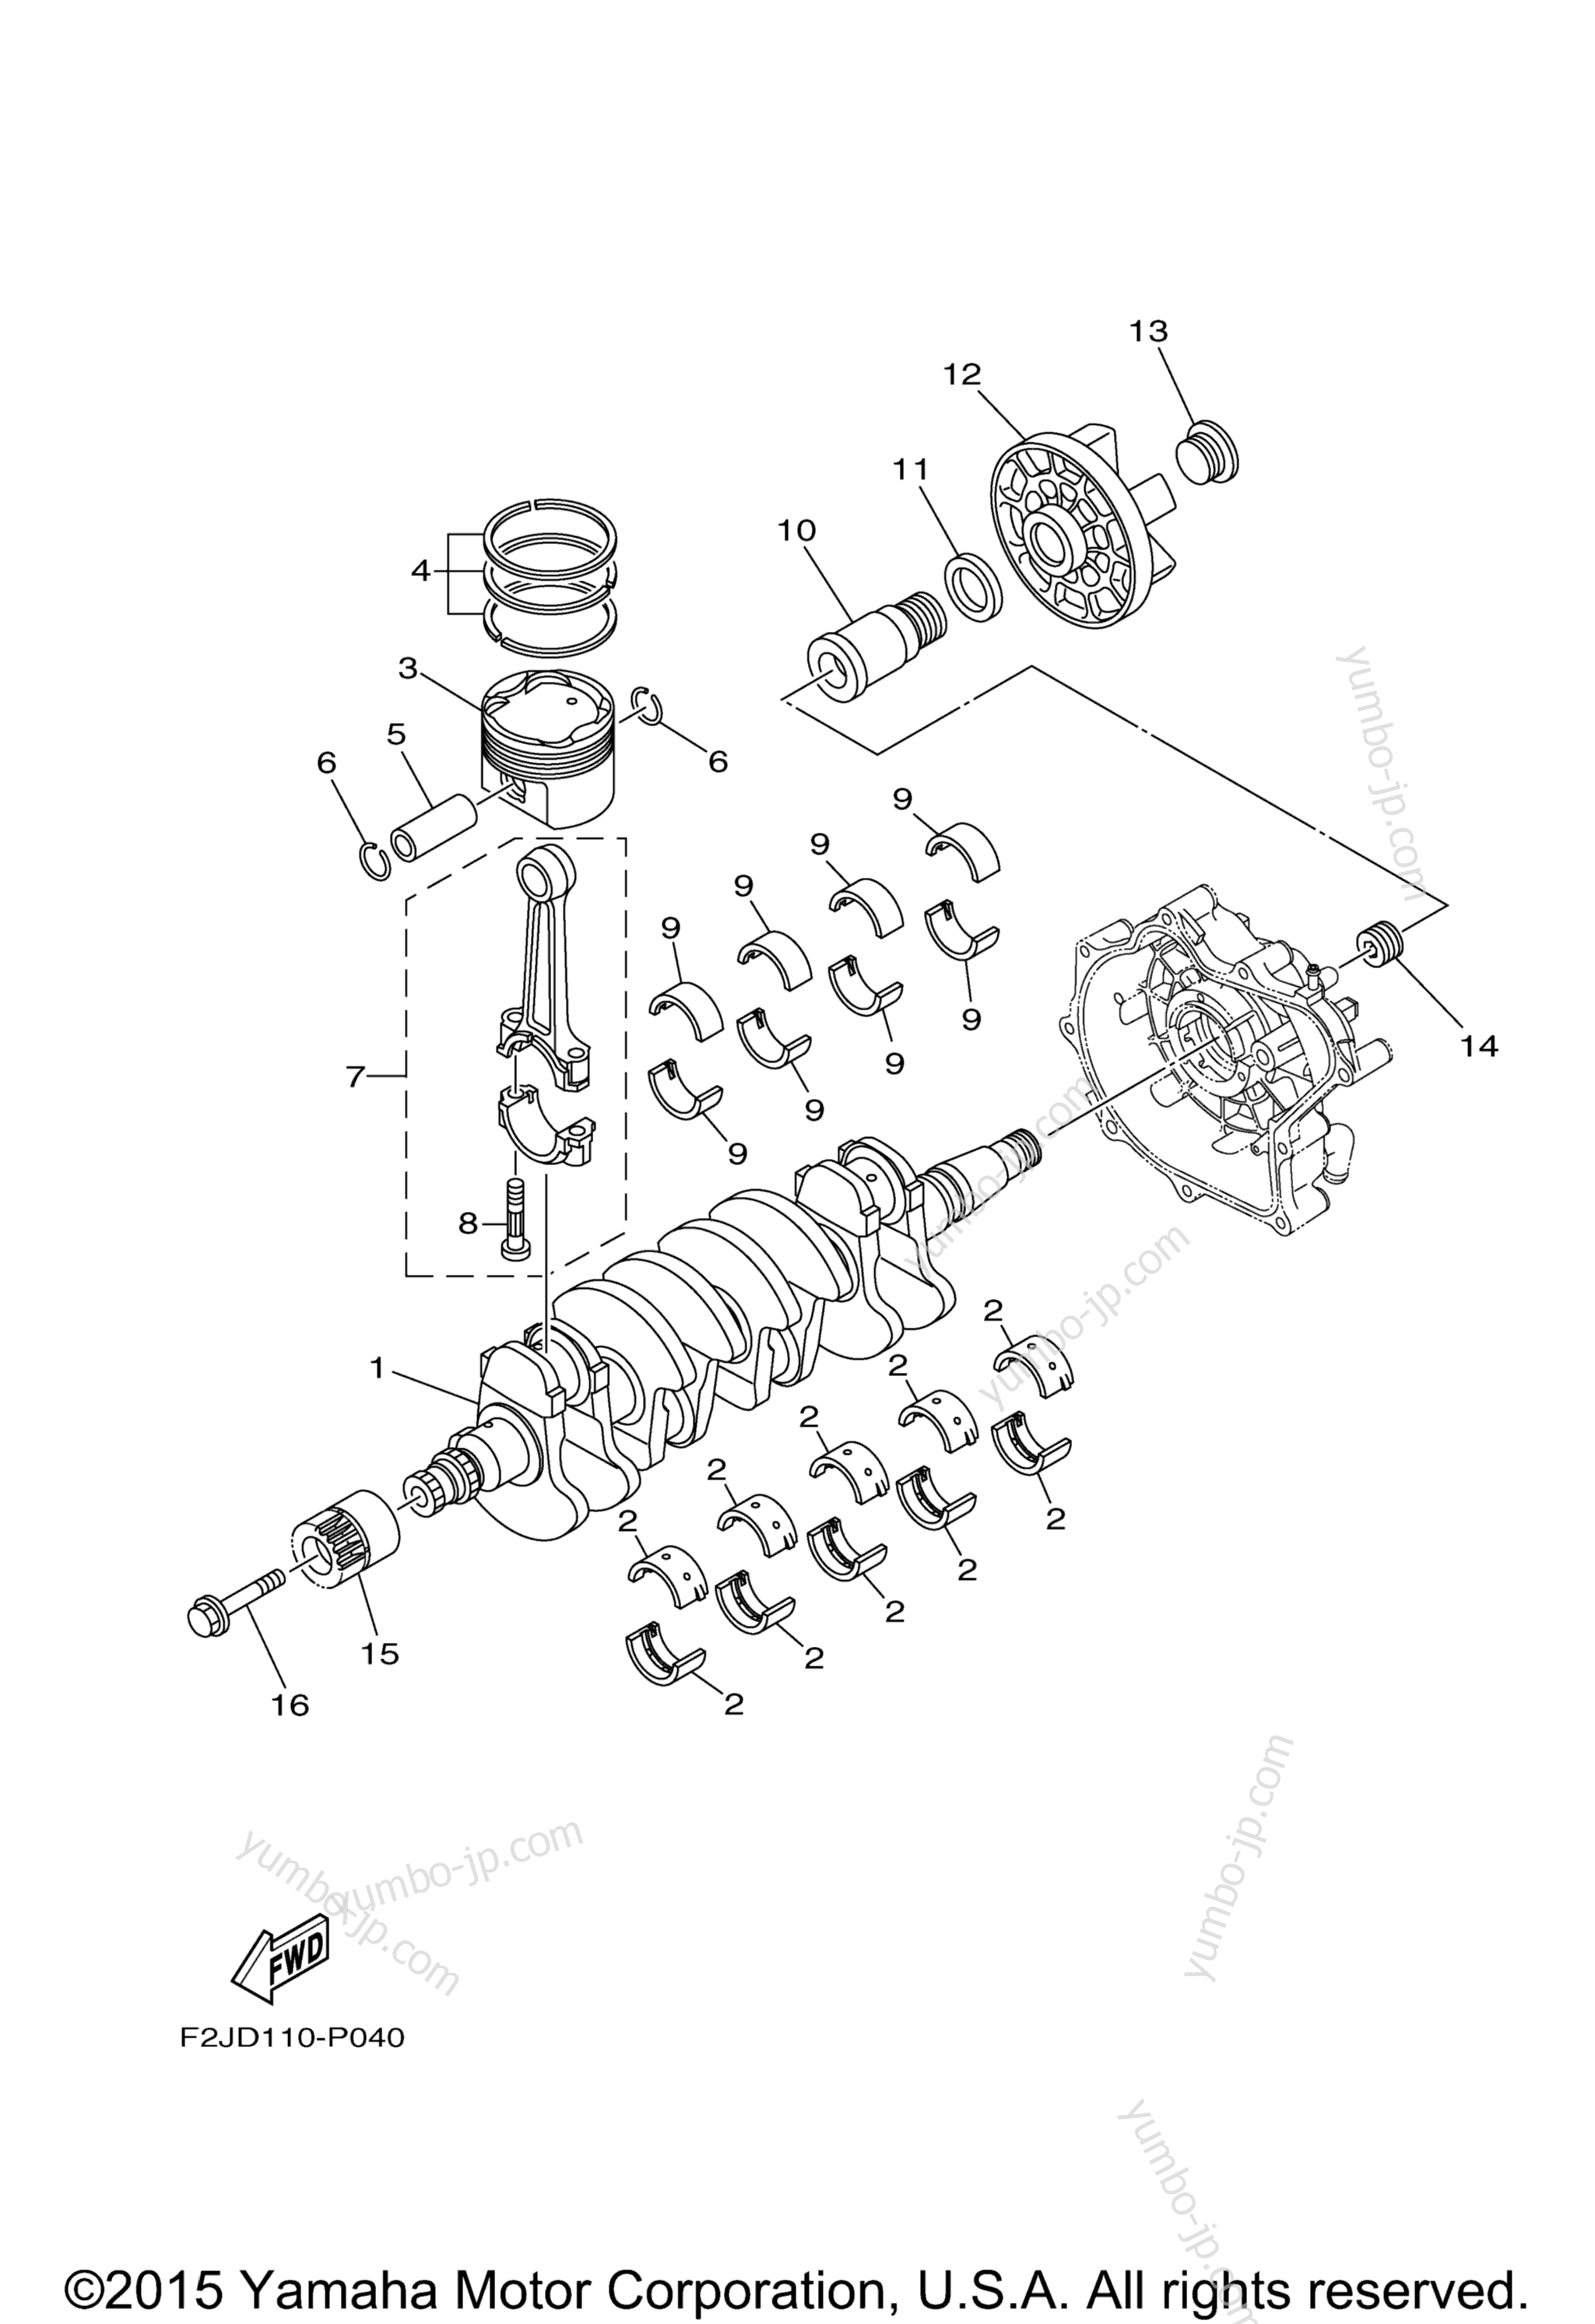 Crankshaft & Piston для катеров YAMAHA SX190 (RX1800BRB) CA 2016 г.